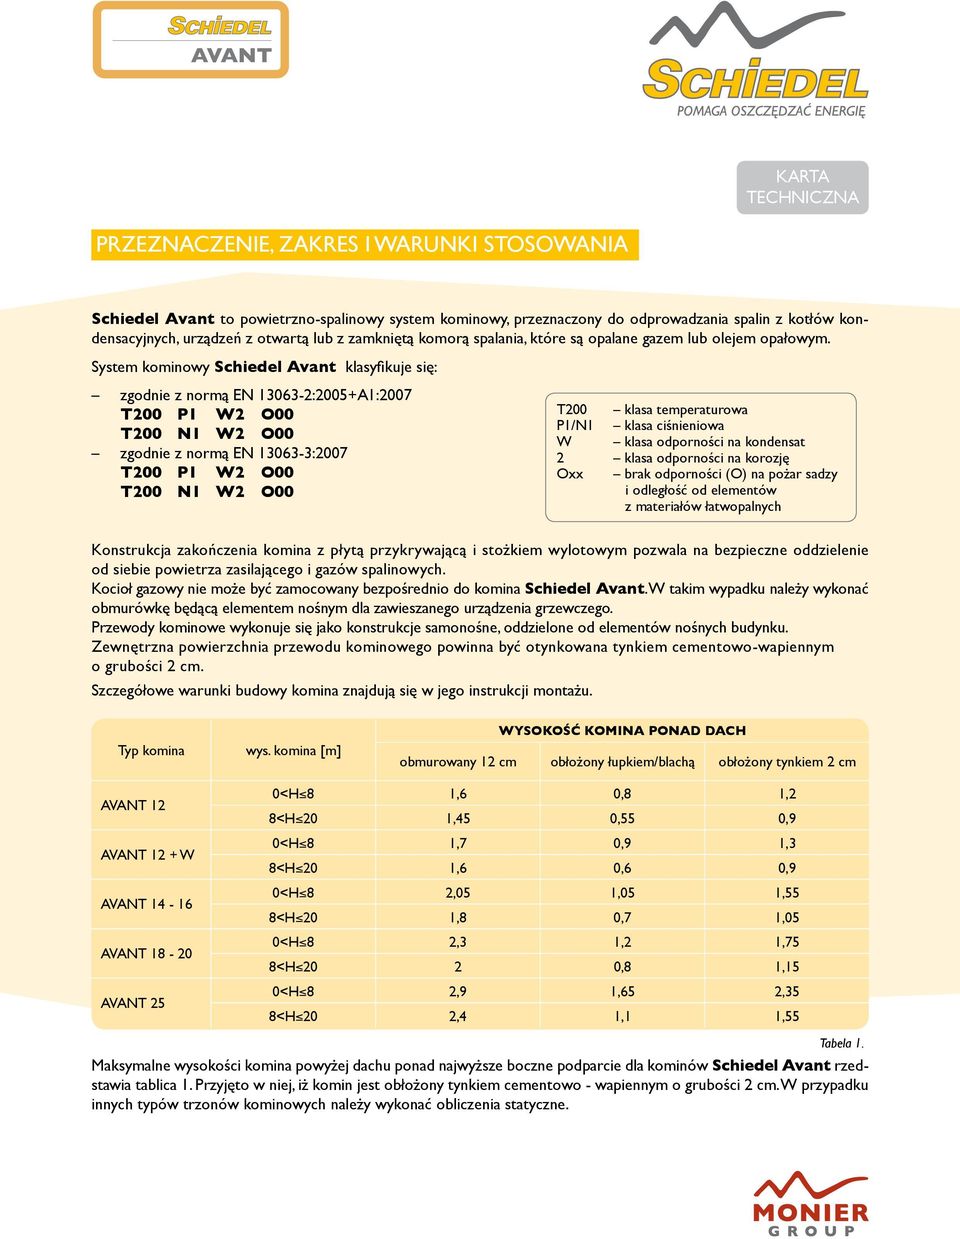 System kominowy Schiedel Avant klasyfikuje się: zgodnie z normą EN 13063-2:2005+A1:2007 T200 klasa temperaturowa P1/N1 klasa ciśnieniowa W klasa odporności na kondensat zgodnie z normą EN